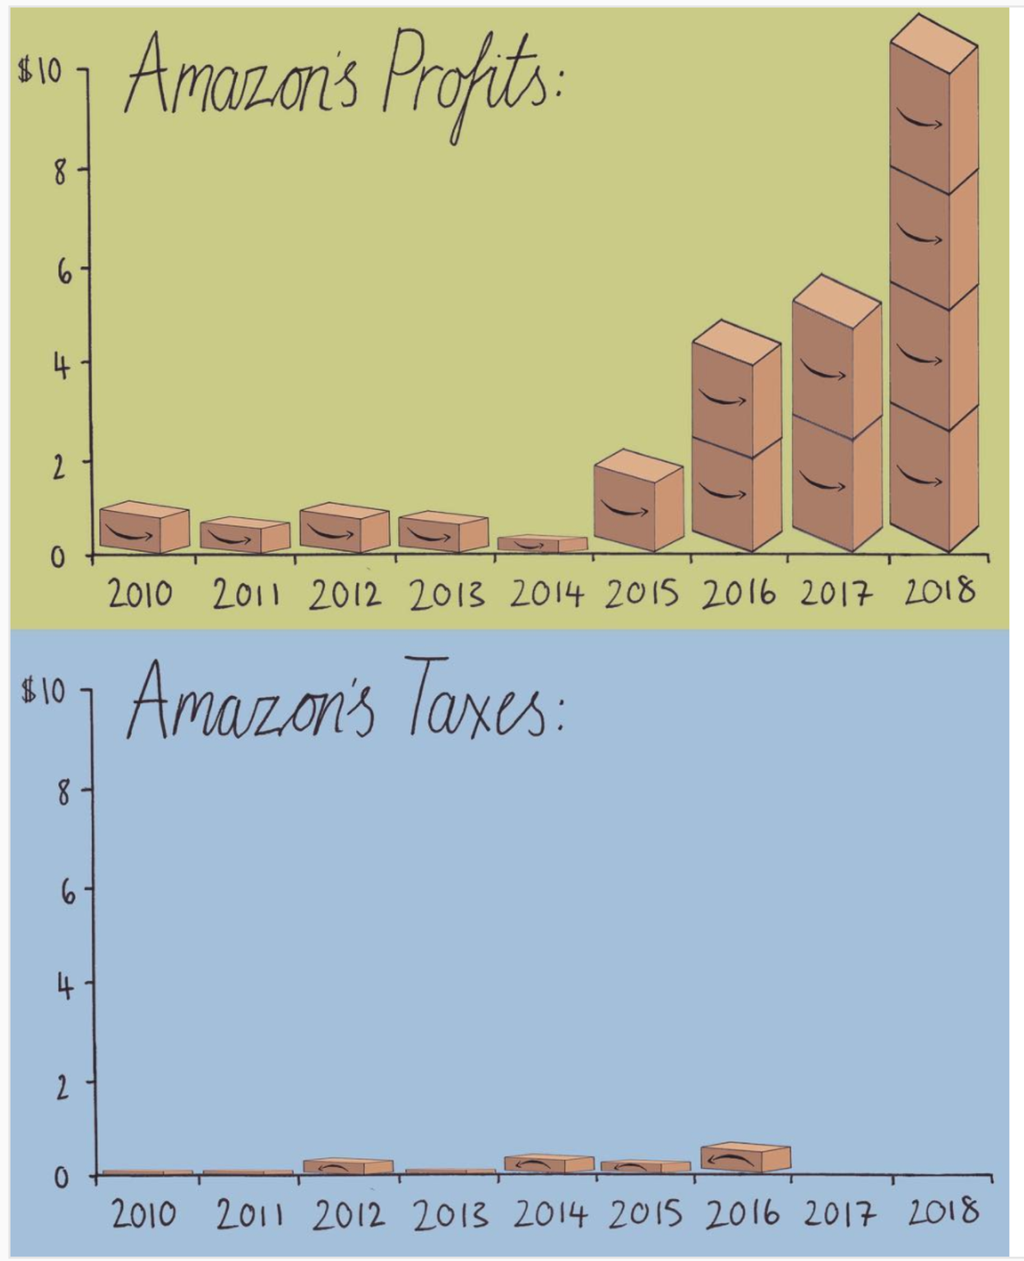 Profitti e tasse di Amazon negli ultimi 10 anni